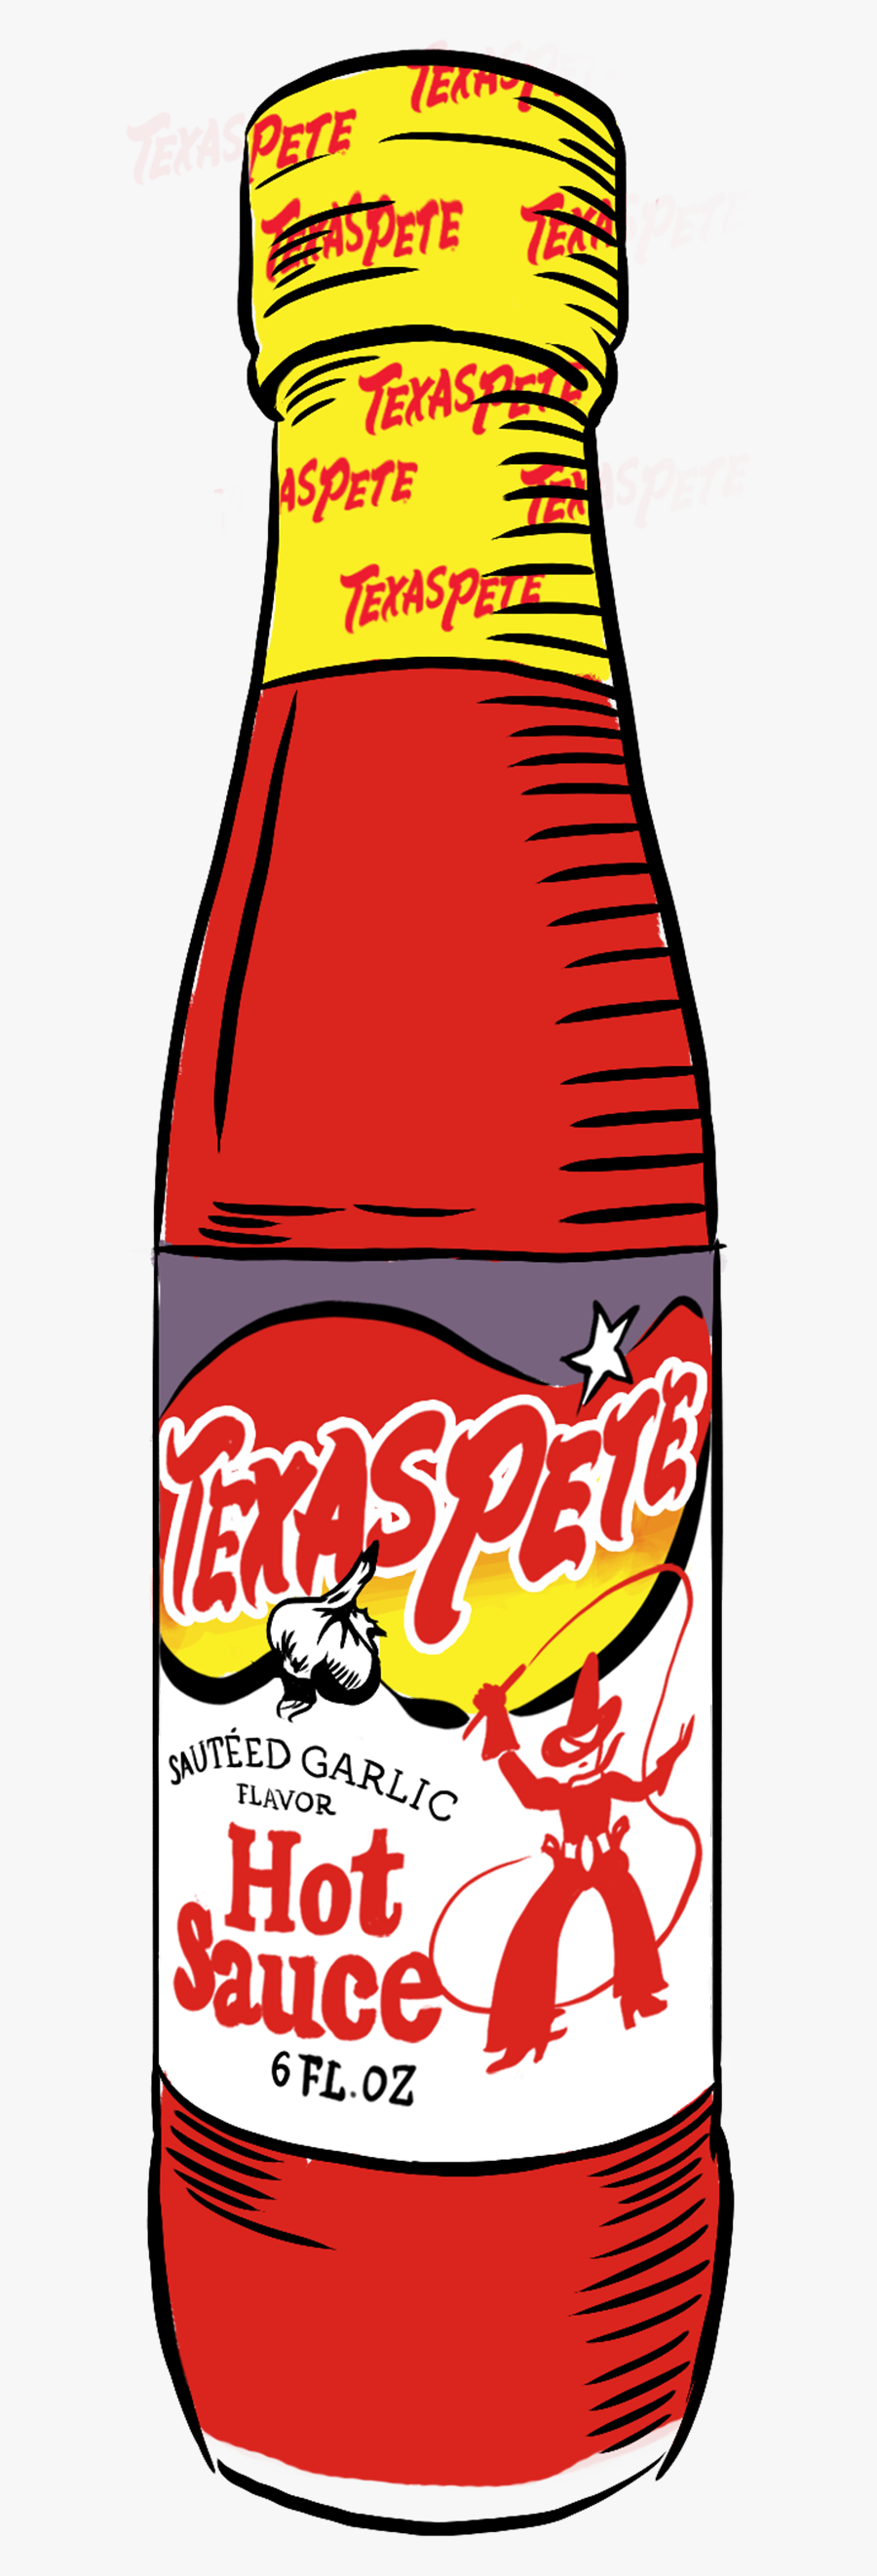 Texas Pete Png - Texas Pete Hot Sauce Bottle, Transparent Clipart